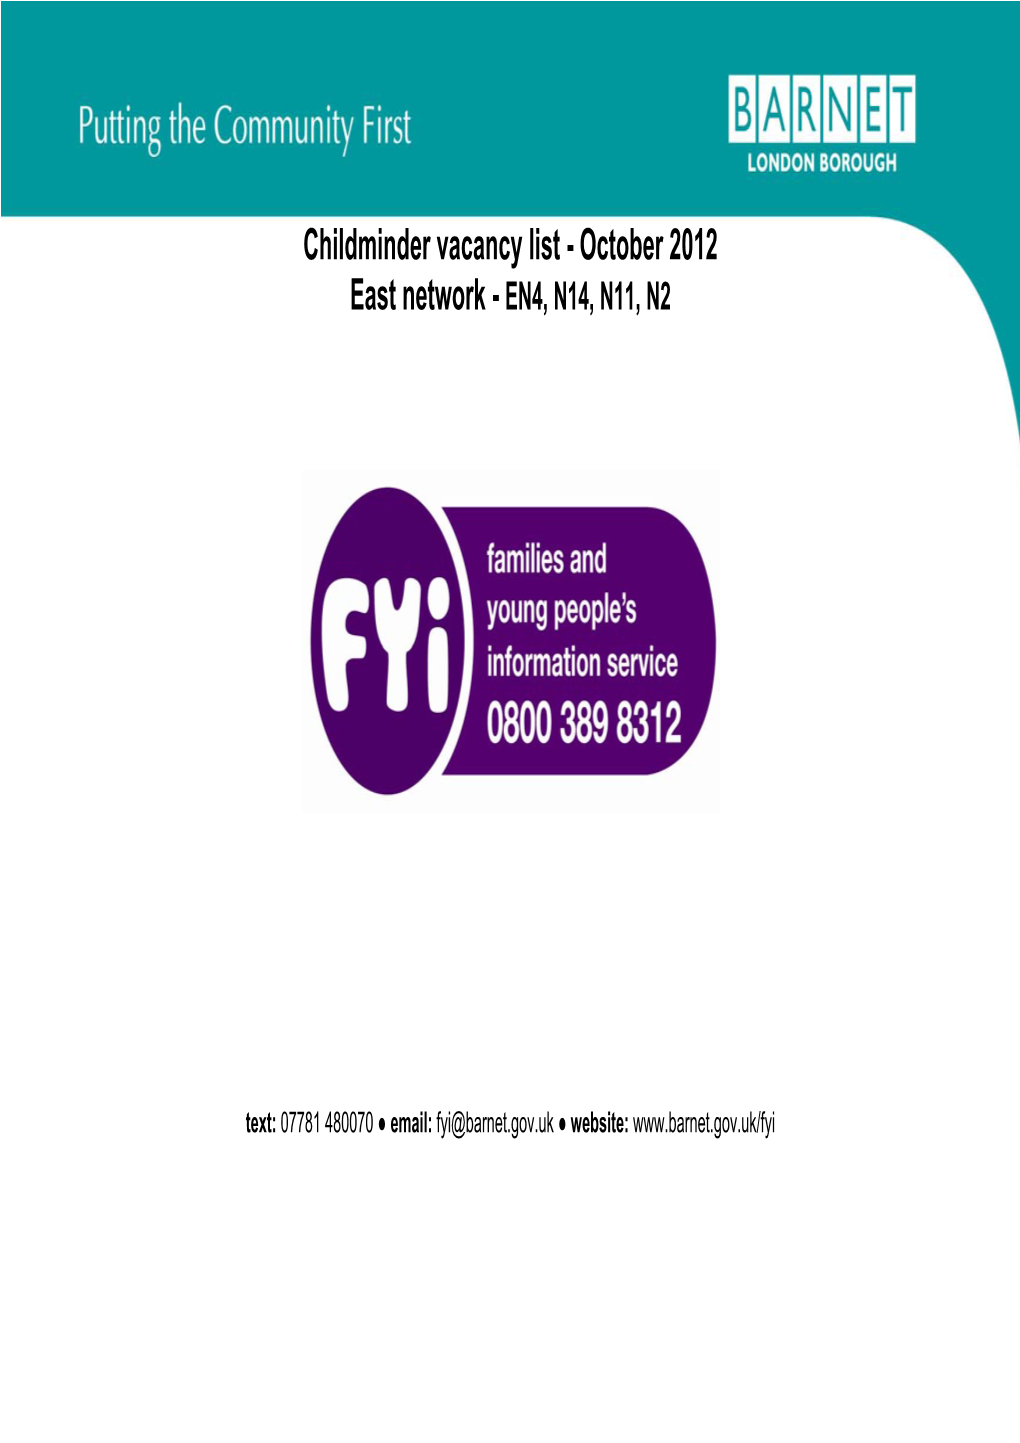 Childminder Vacancy List - October 2012 East Network - EN4, N14, N11, N2